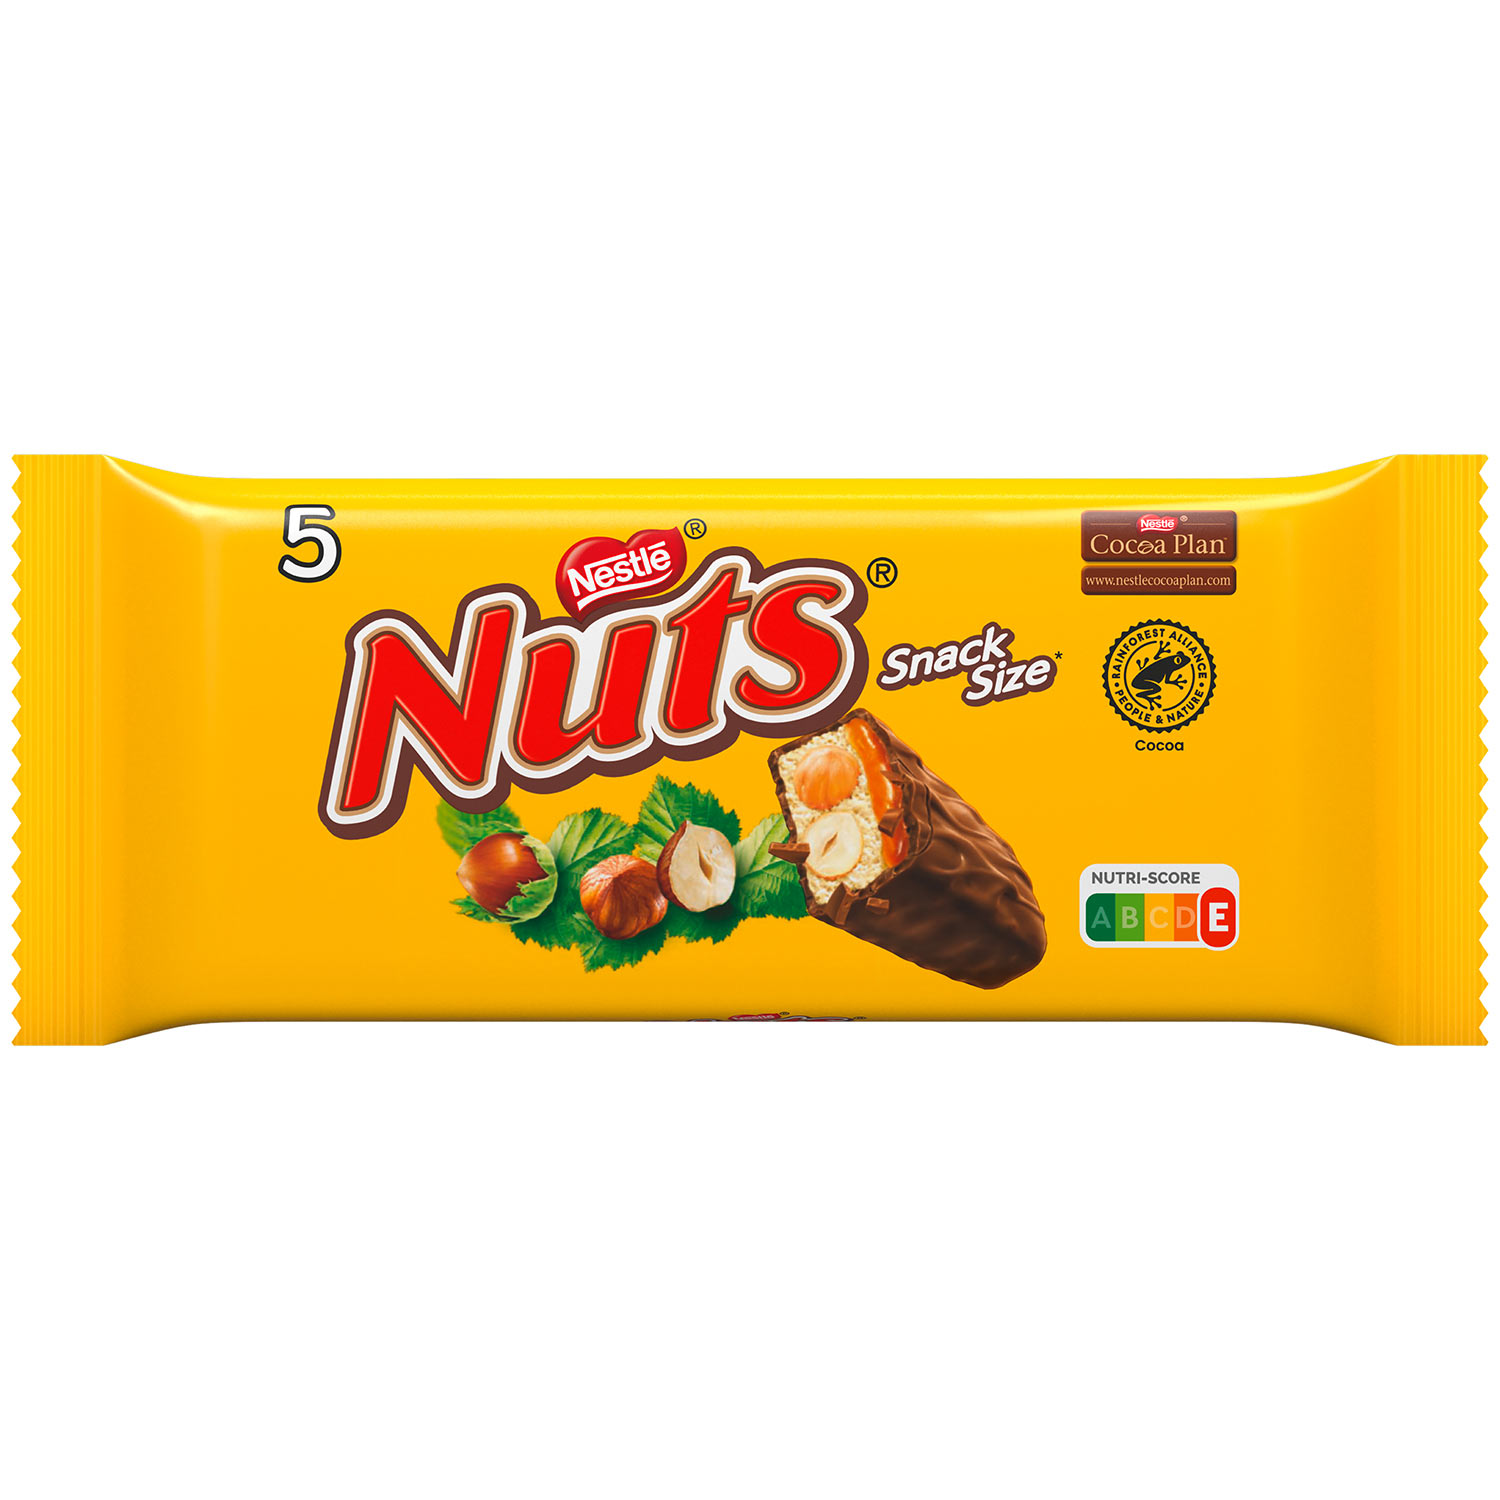 Nestlé Nuts čokoládové tyčinky s karamelem 5 x 30 g, 150 g